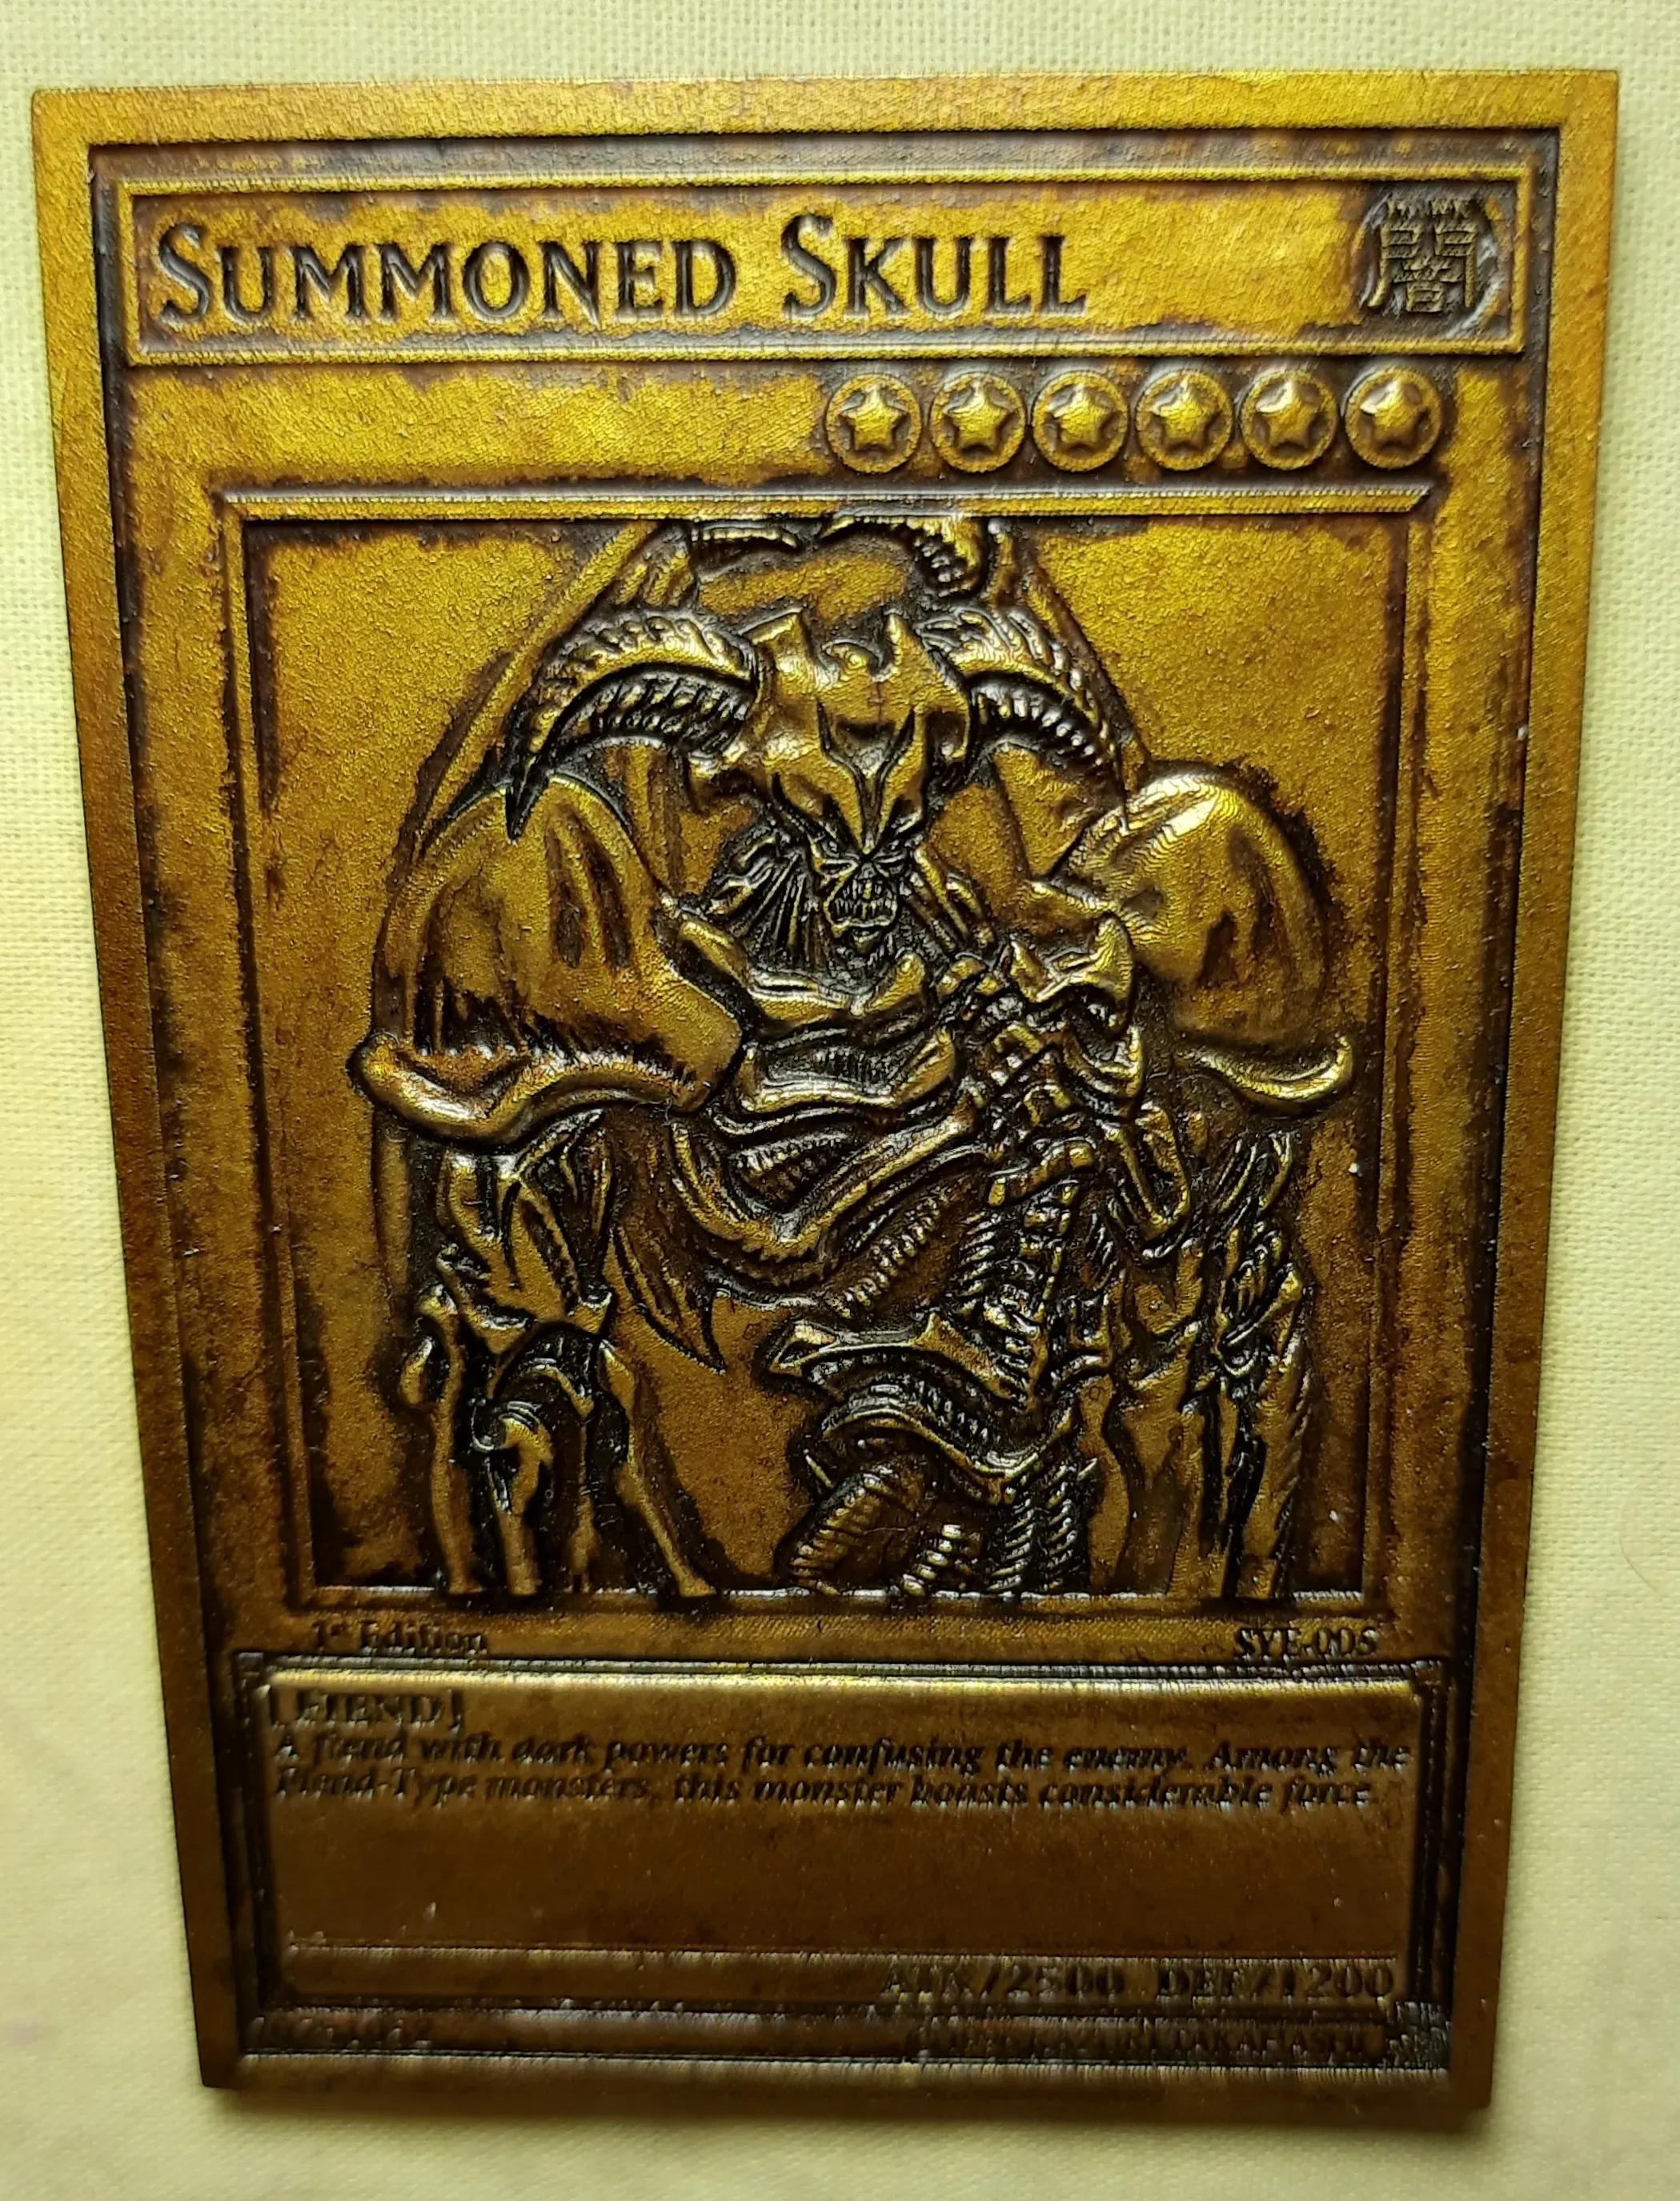 summoned skull - yugioh